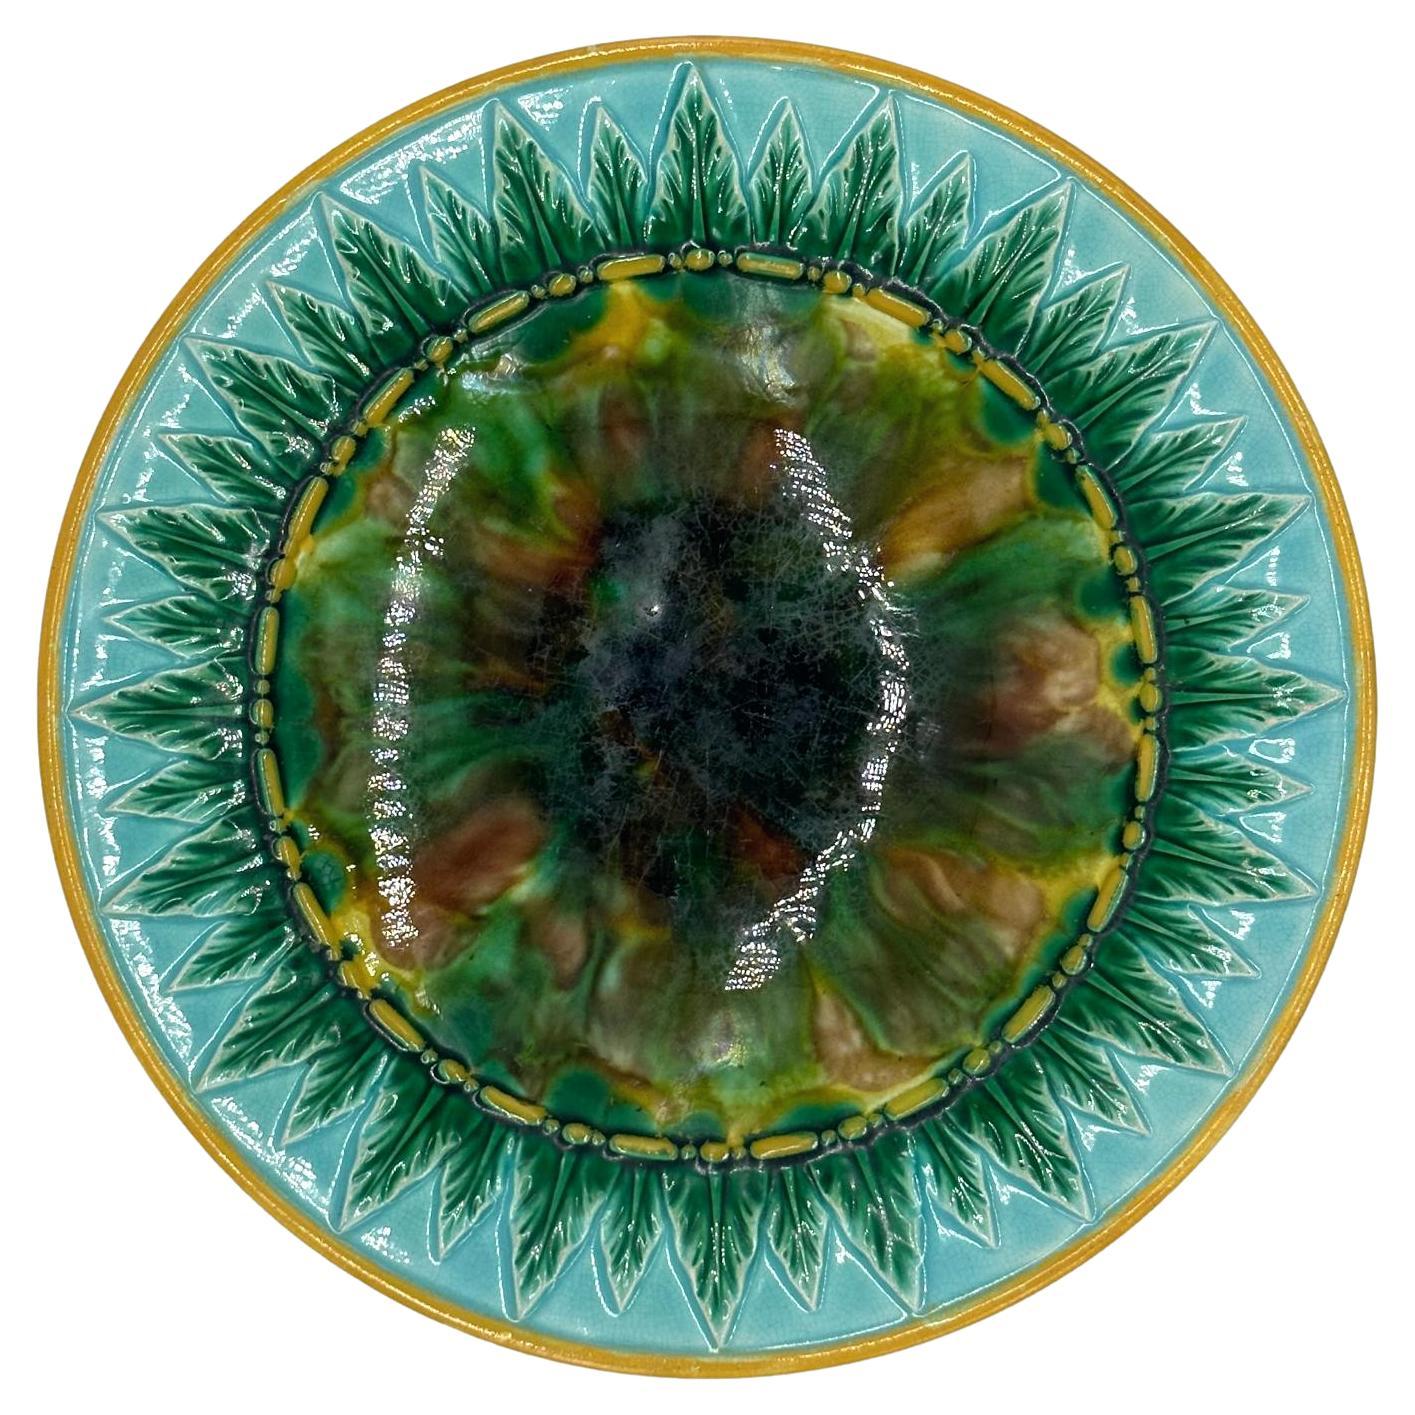 George Jones Majolica Dish, Tortoiseshell Mottling, Green Leaves on Turquoise For Sale